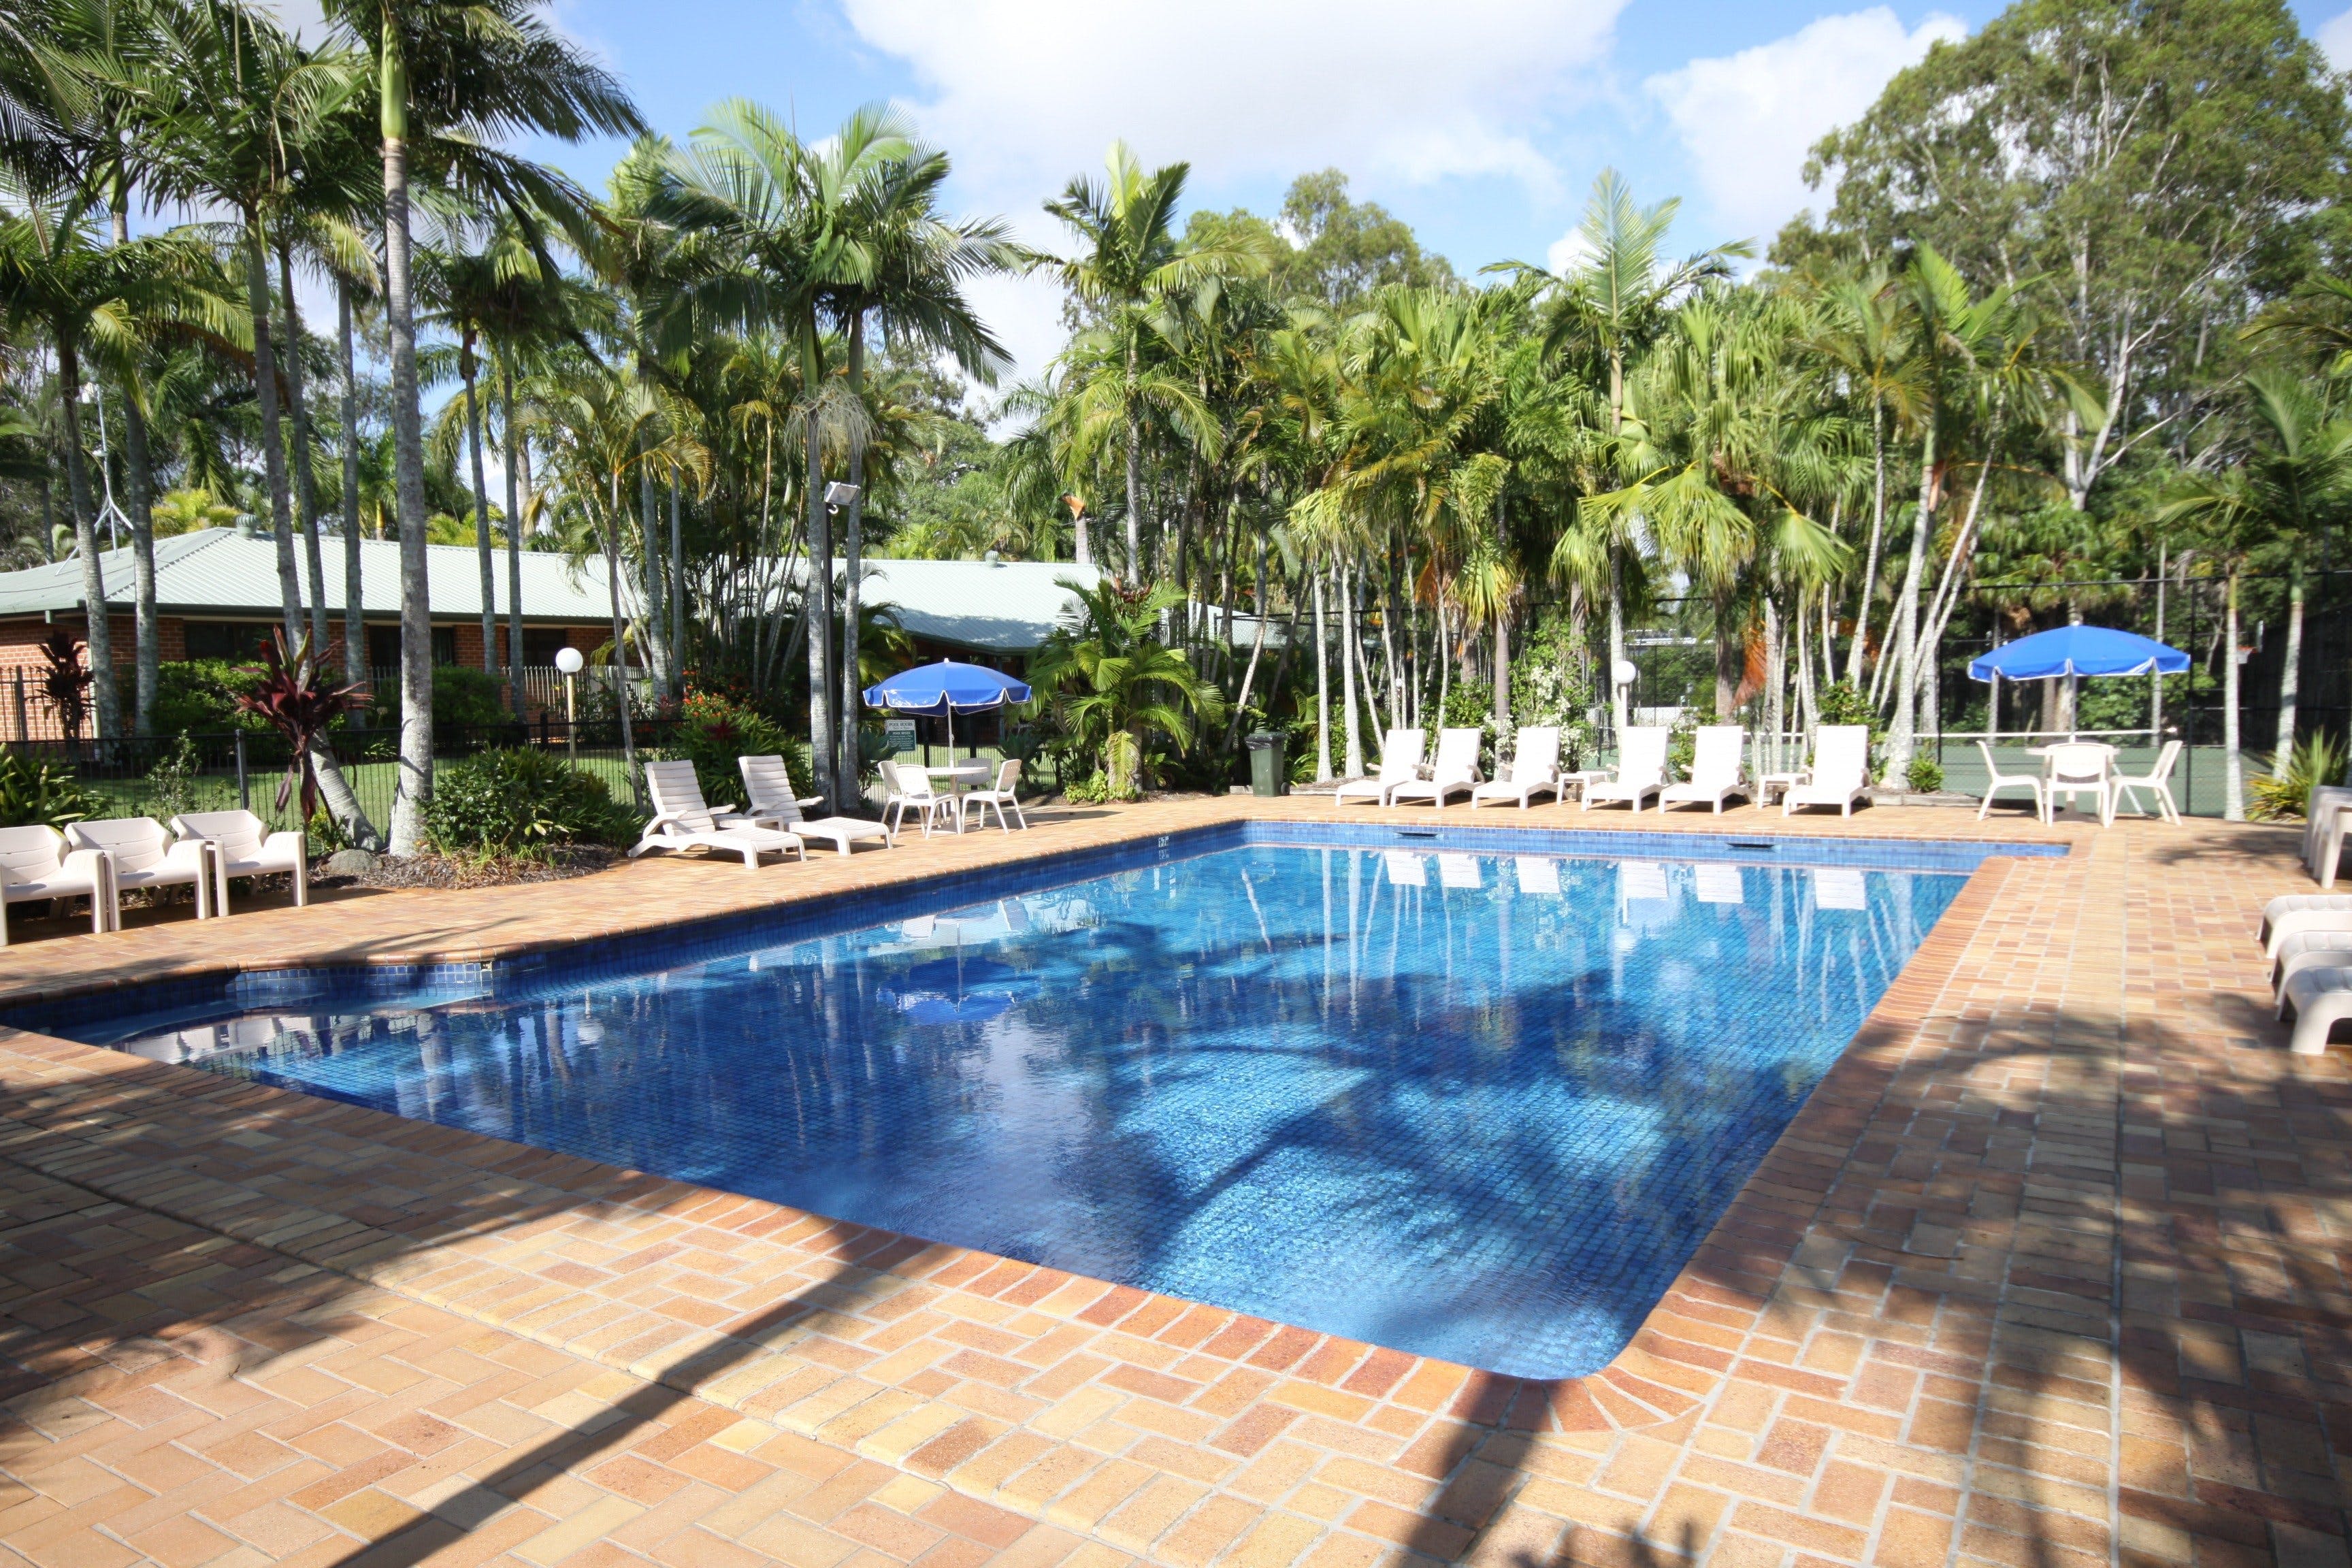 Brisbane Gateway Resort - Accommodation Resorts